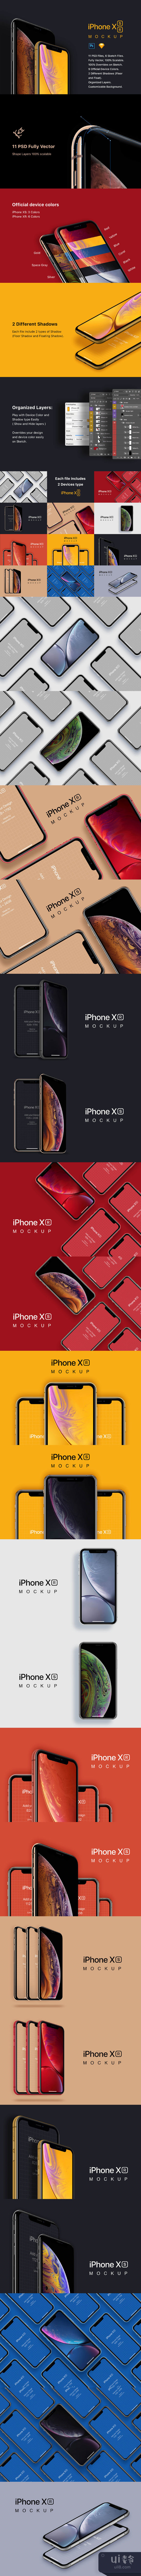 11个iPhone XS XR模拟图 (11 iPhone XS XR Mockups)插图1